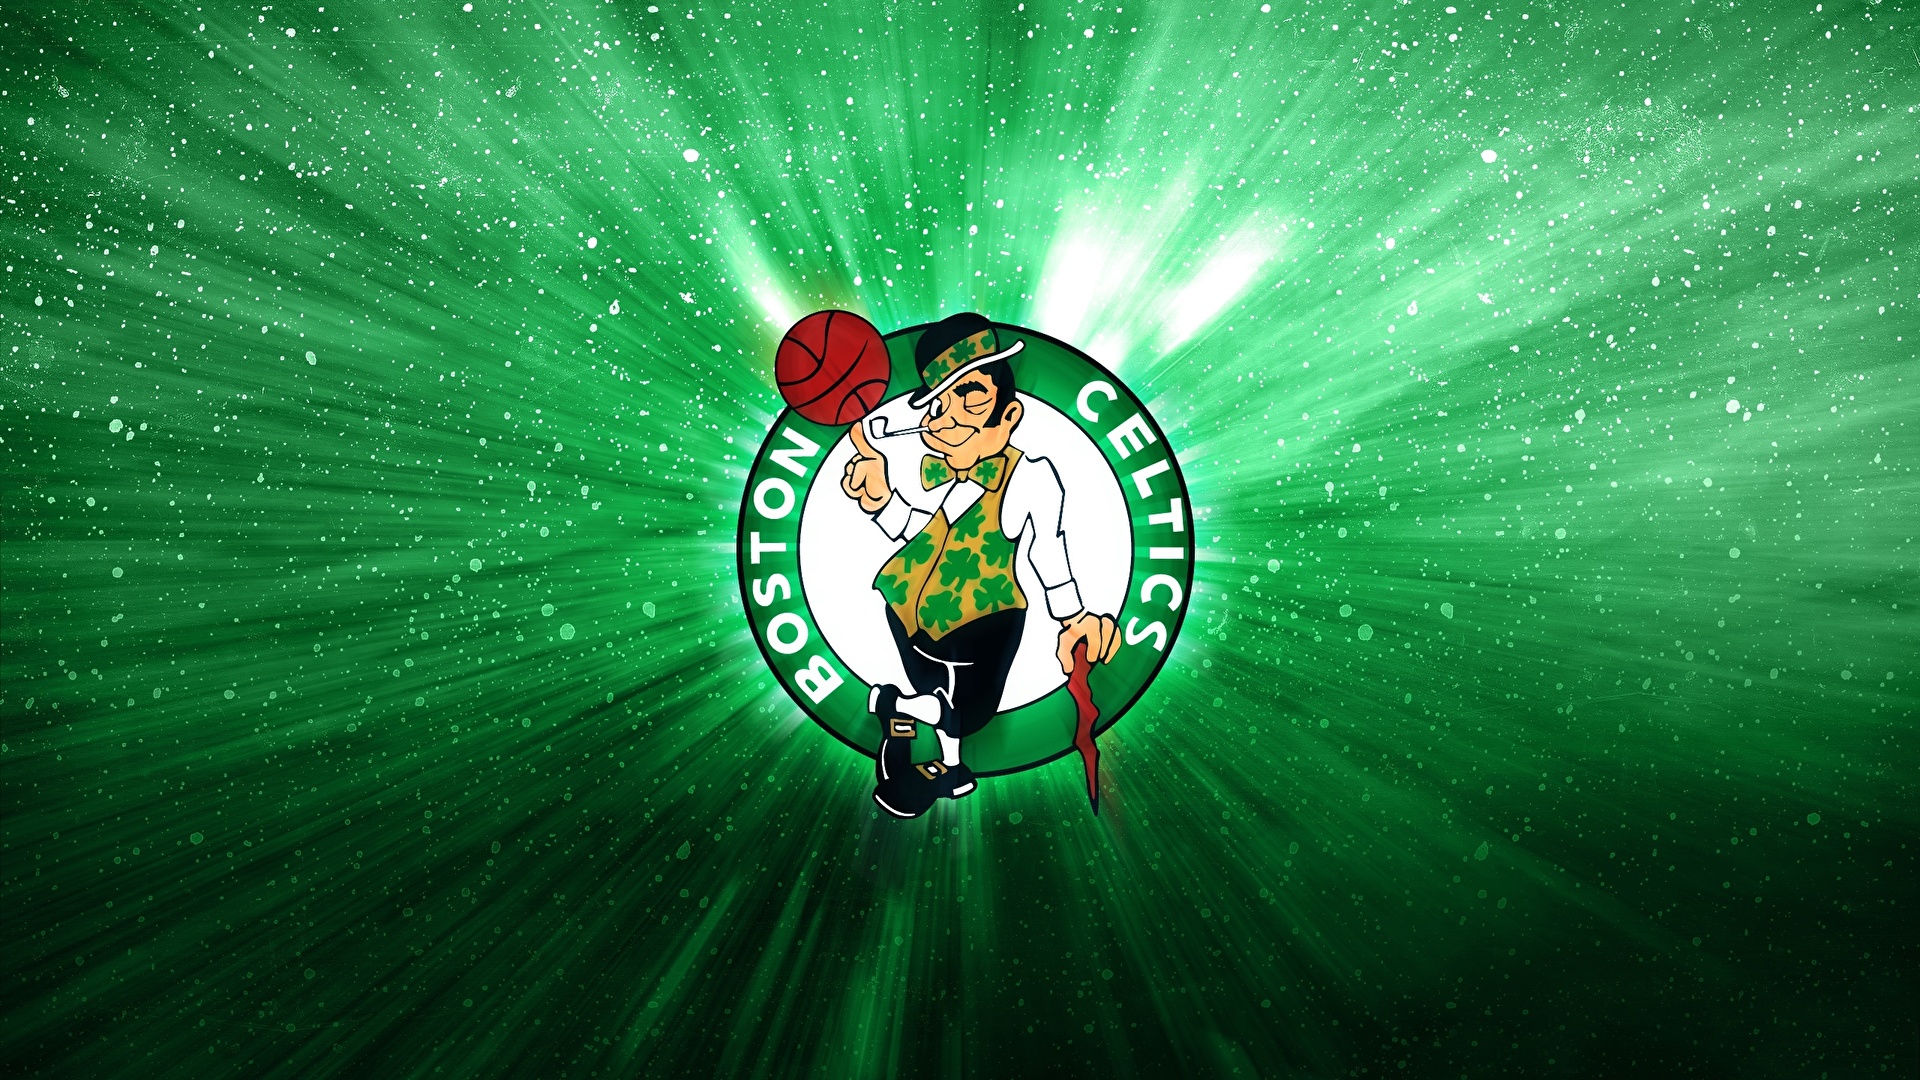 壁紙 19x1080 ロゴエンブレム バスケットボール Boston Celtics Nba スポーツ ダウンロード 写真